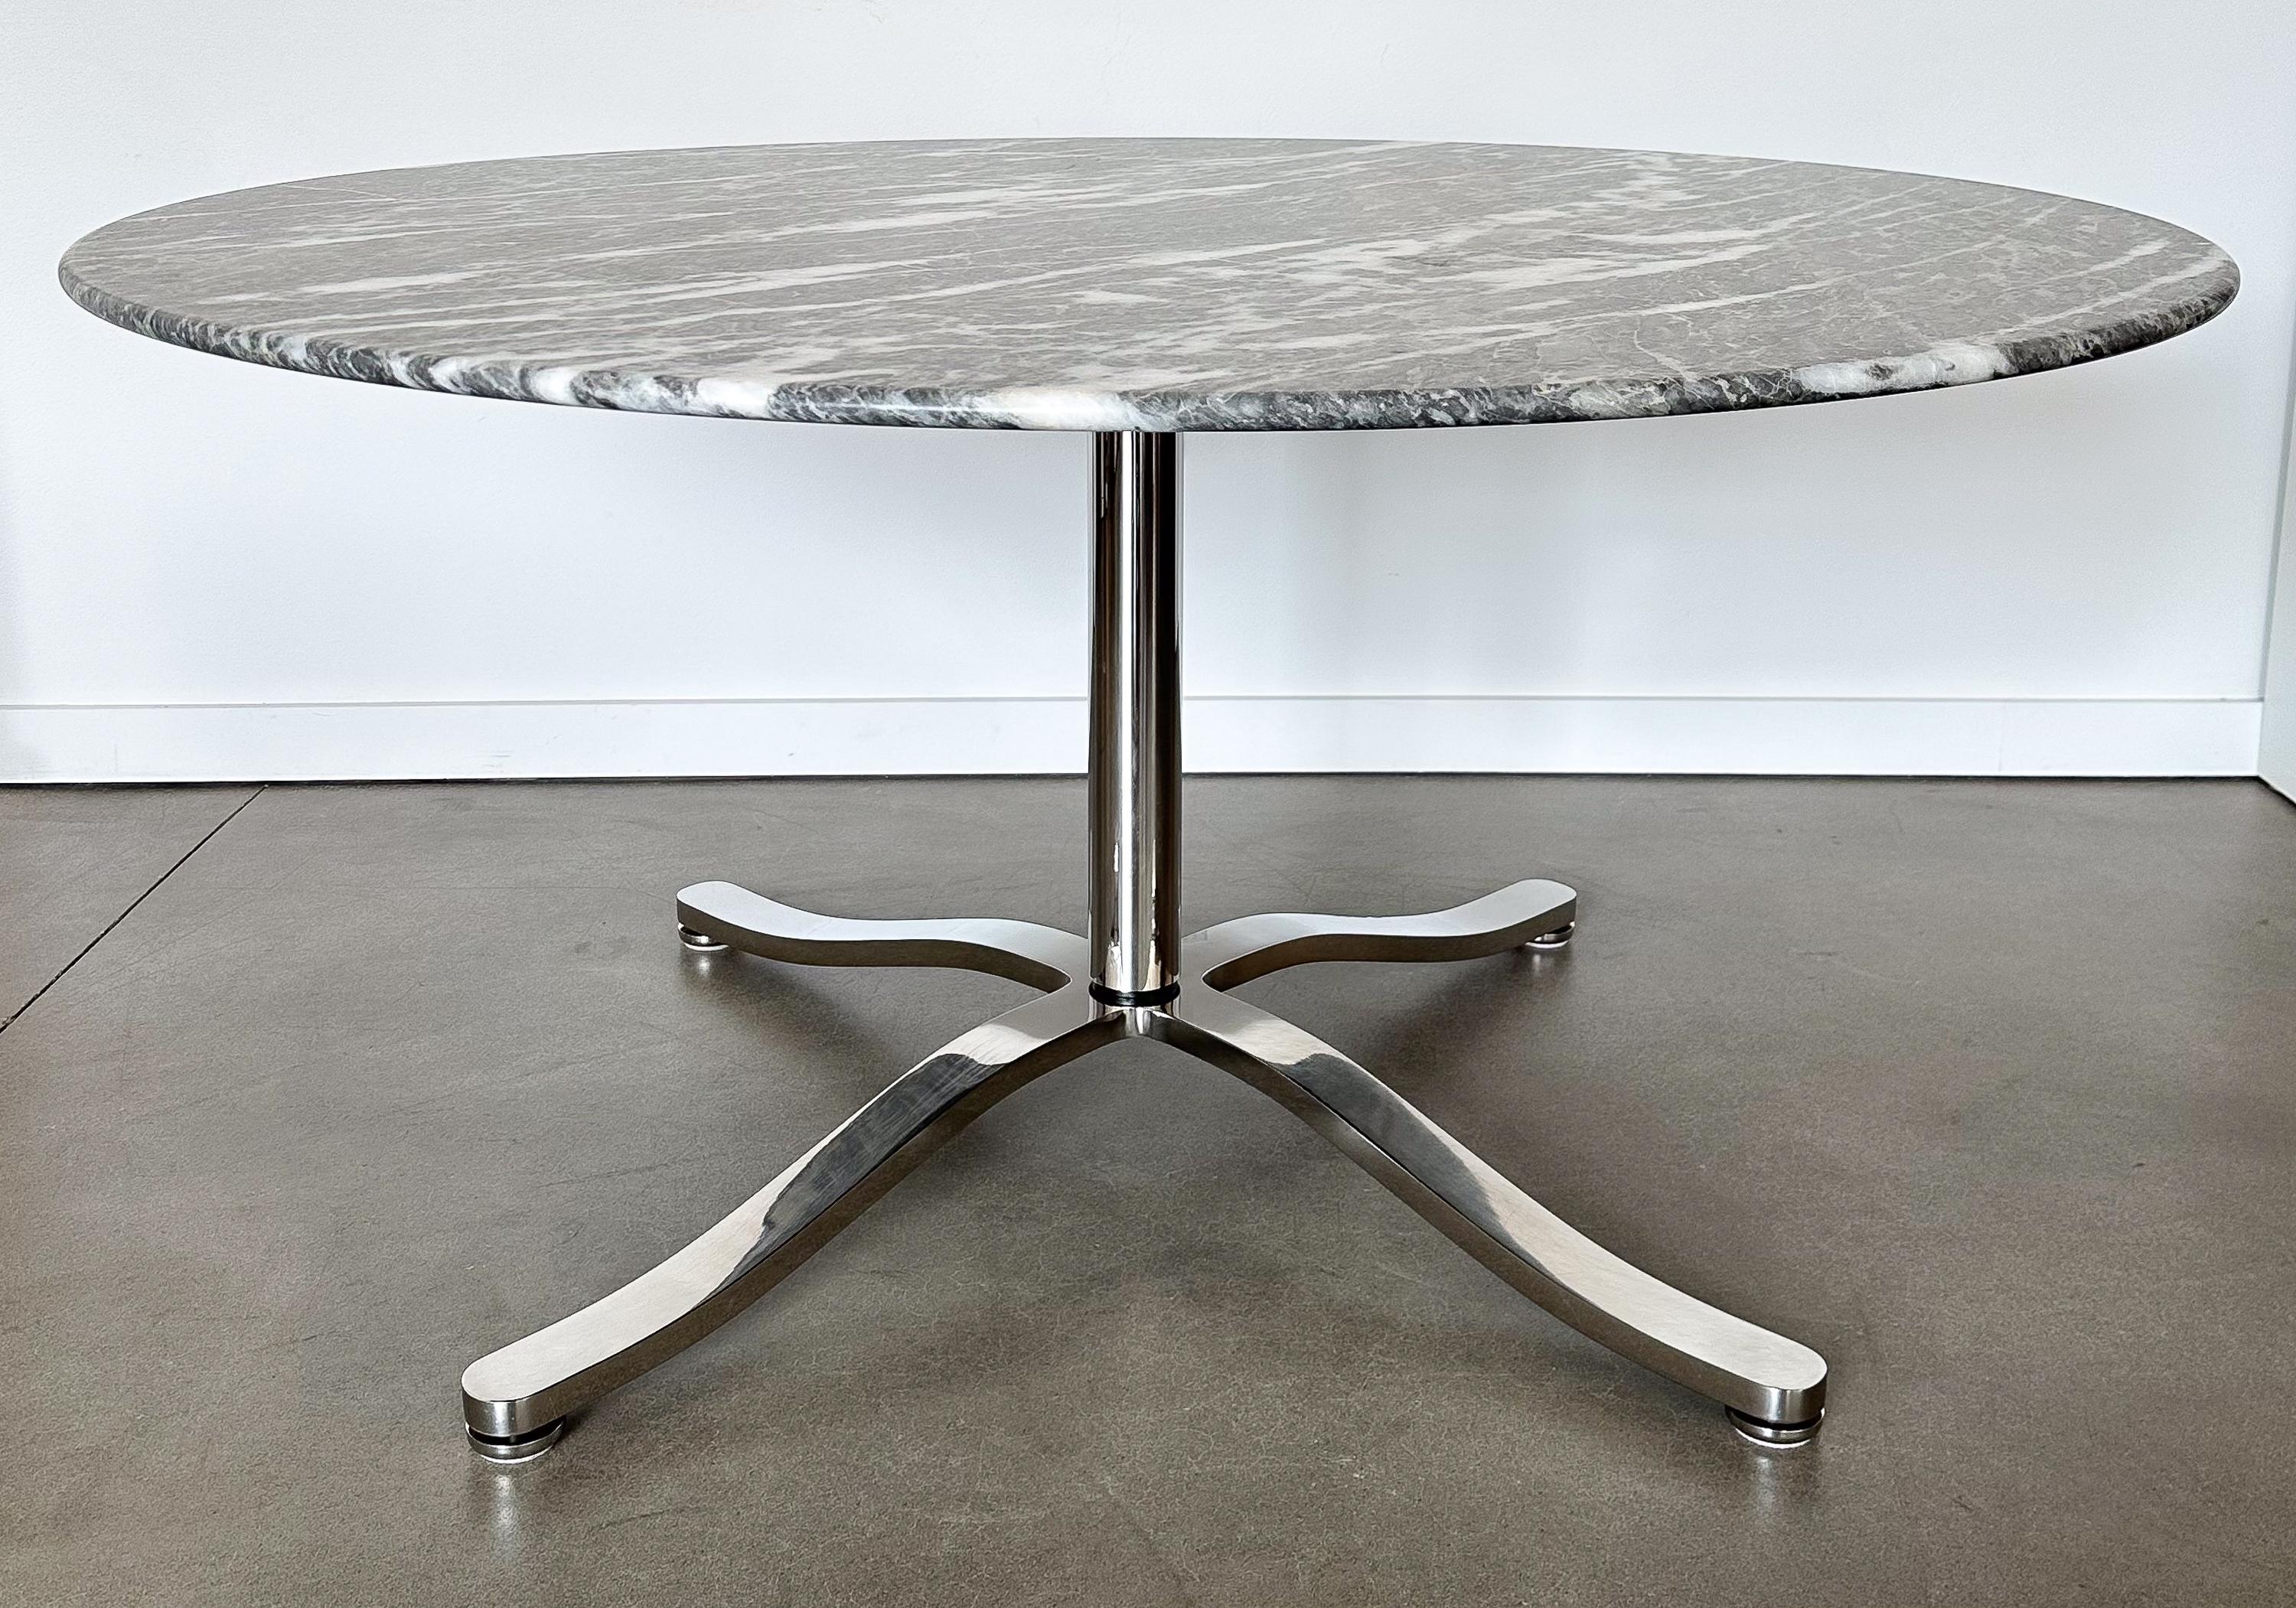 Cette table de salle à manger en marbre, créée par le maître du design Nicos Zographos, rehausse votre expérience gastronomique. Fabriquée à l'époque du design vibrant des années 1970, cette table est une incarnation stellaire de l'élégance, de la